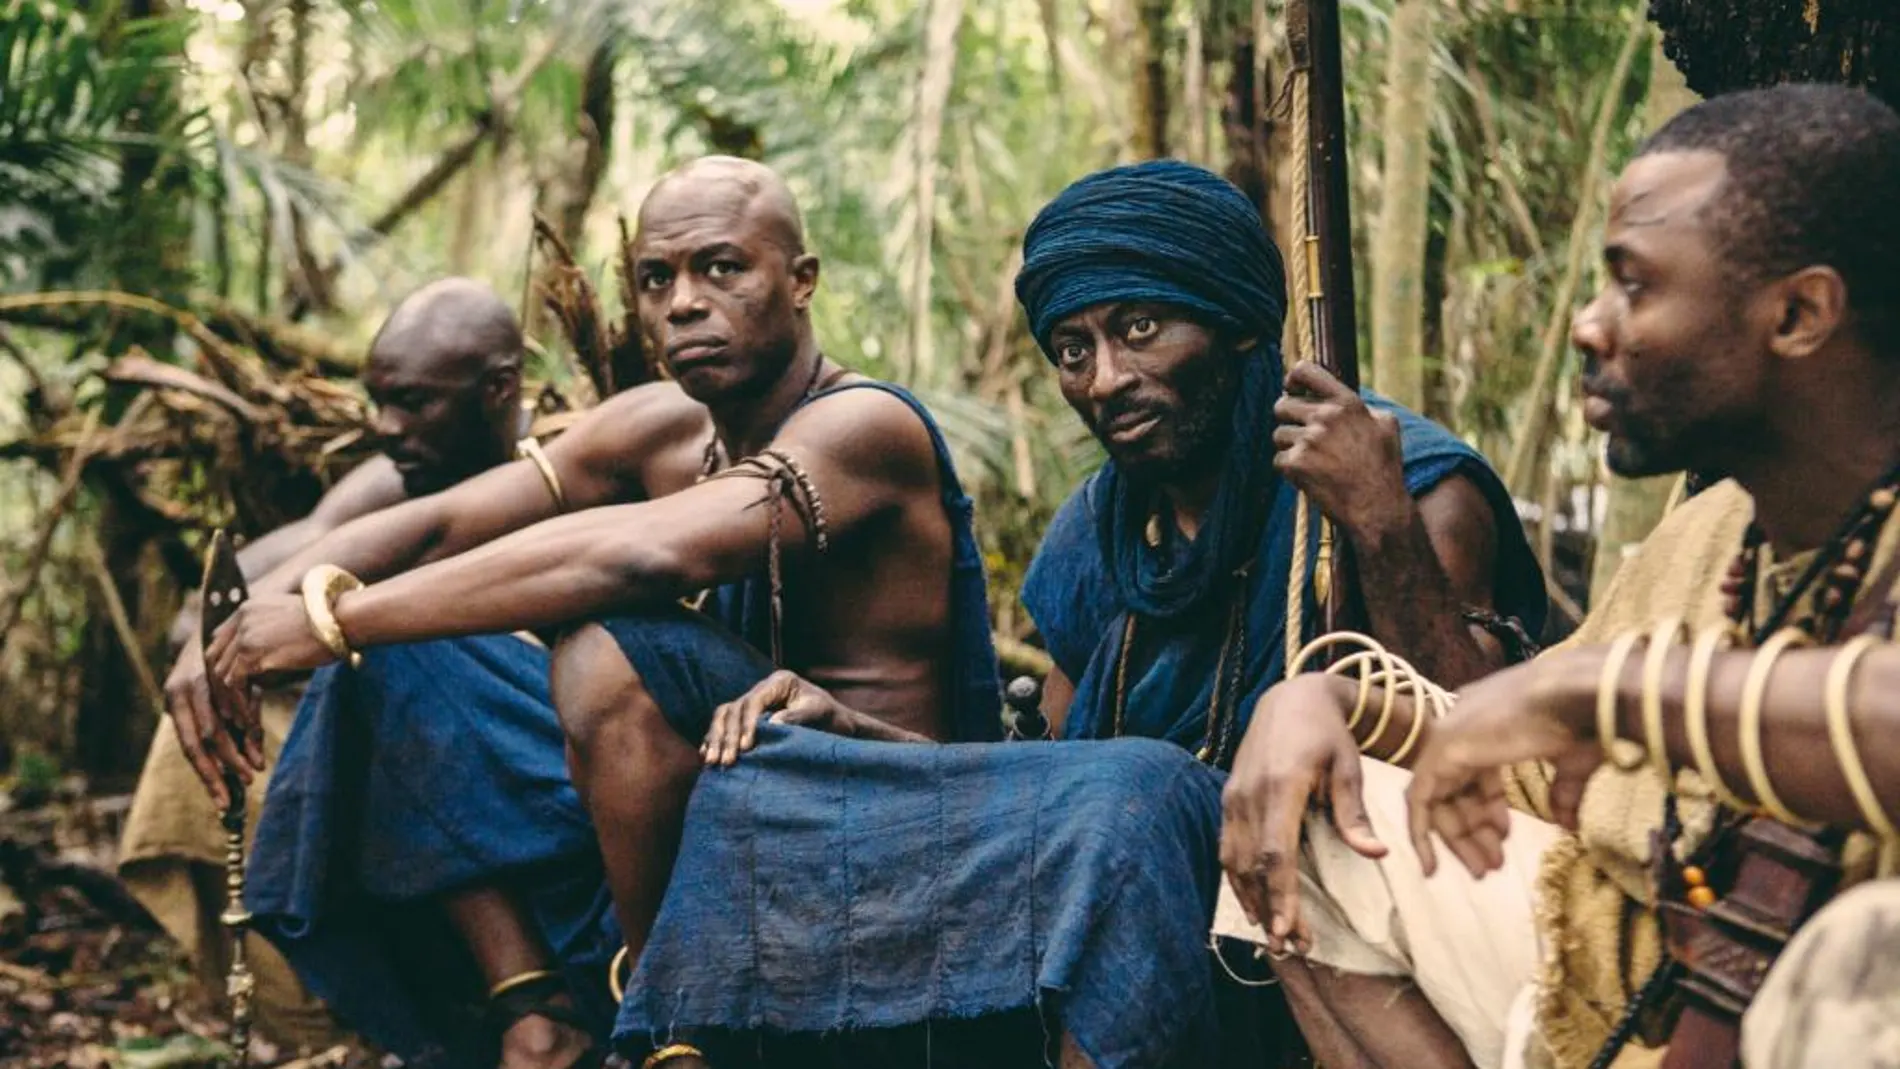 Fotograma de la miniserie "Raíces", que narra la historia de un guerrero mandinga capturado en África Occidental y vendido como esclavo en Estados Unidos.